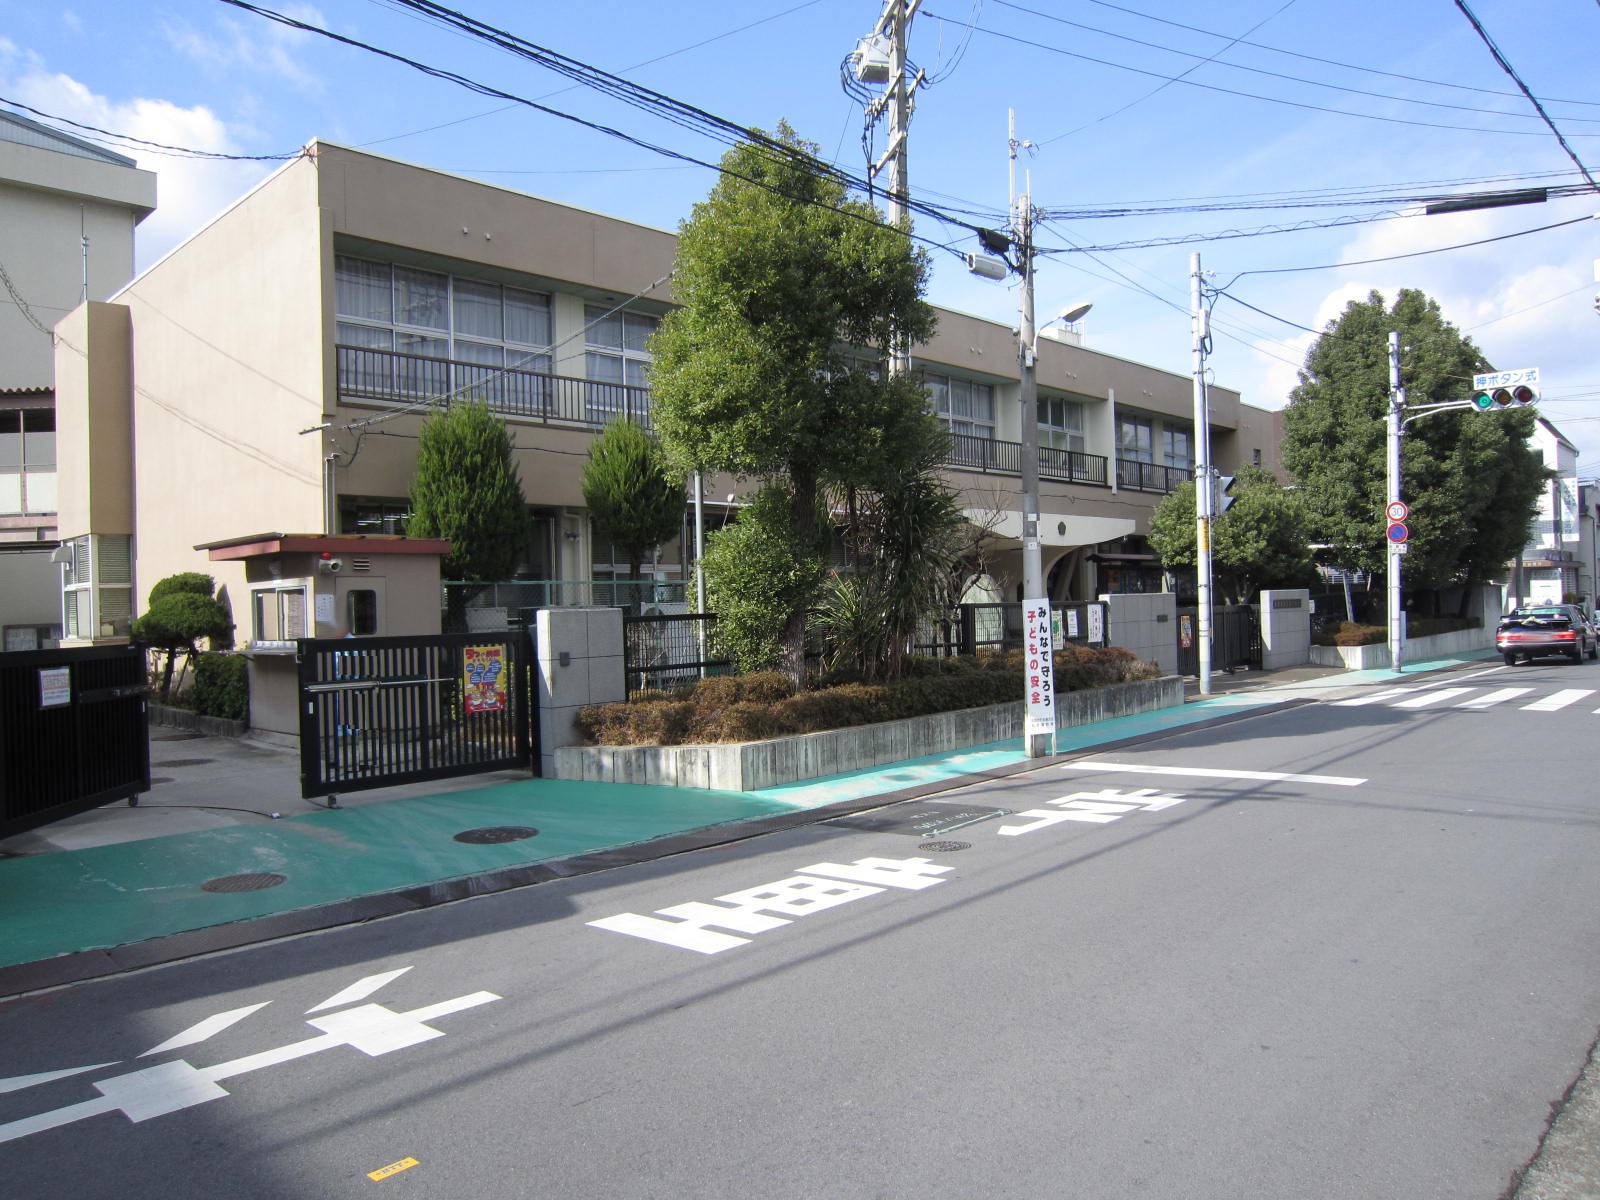 Primary school. 416m to Matsubara Municipal Miyake elementary school (elementary school)